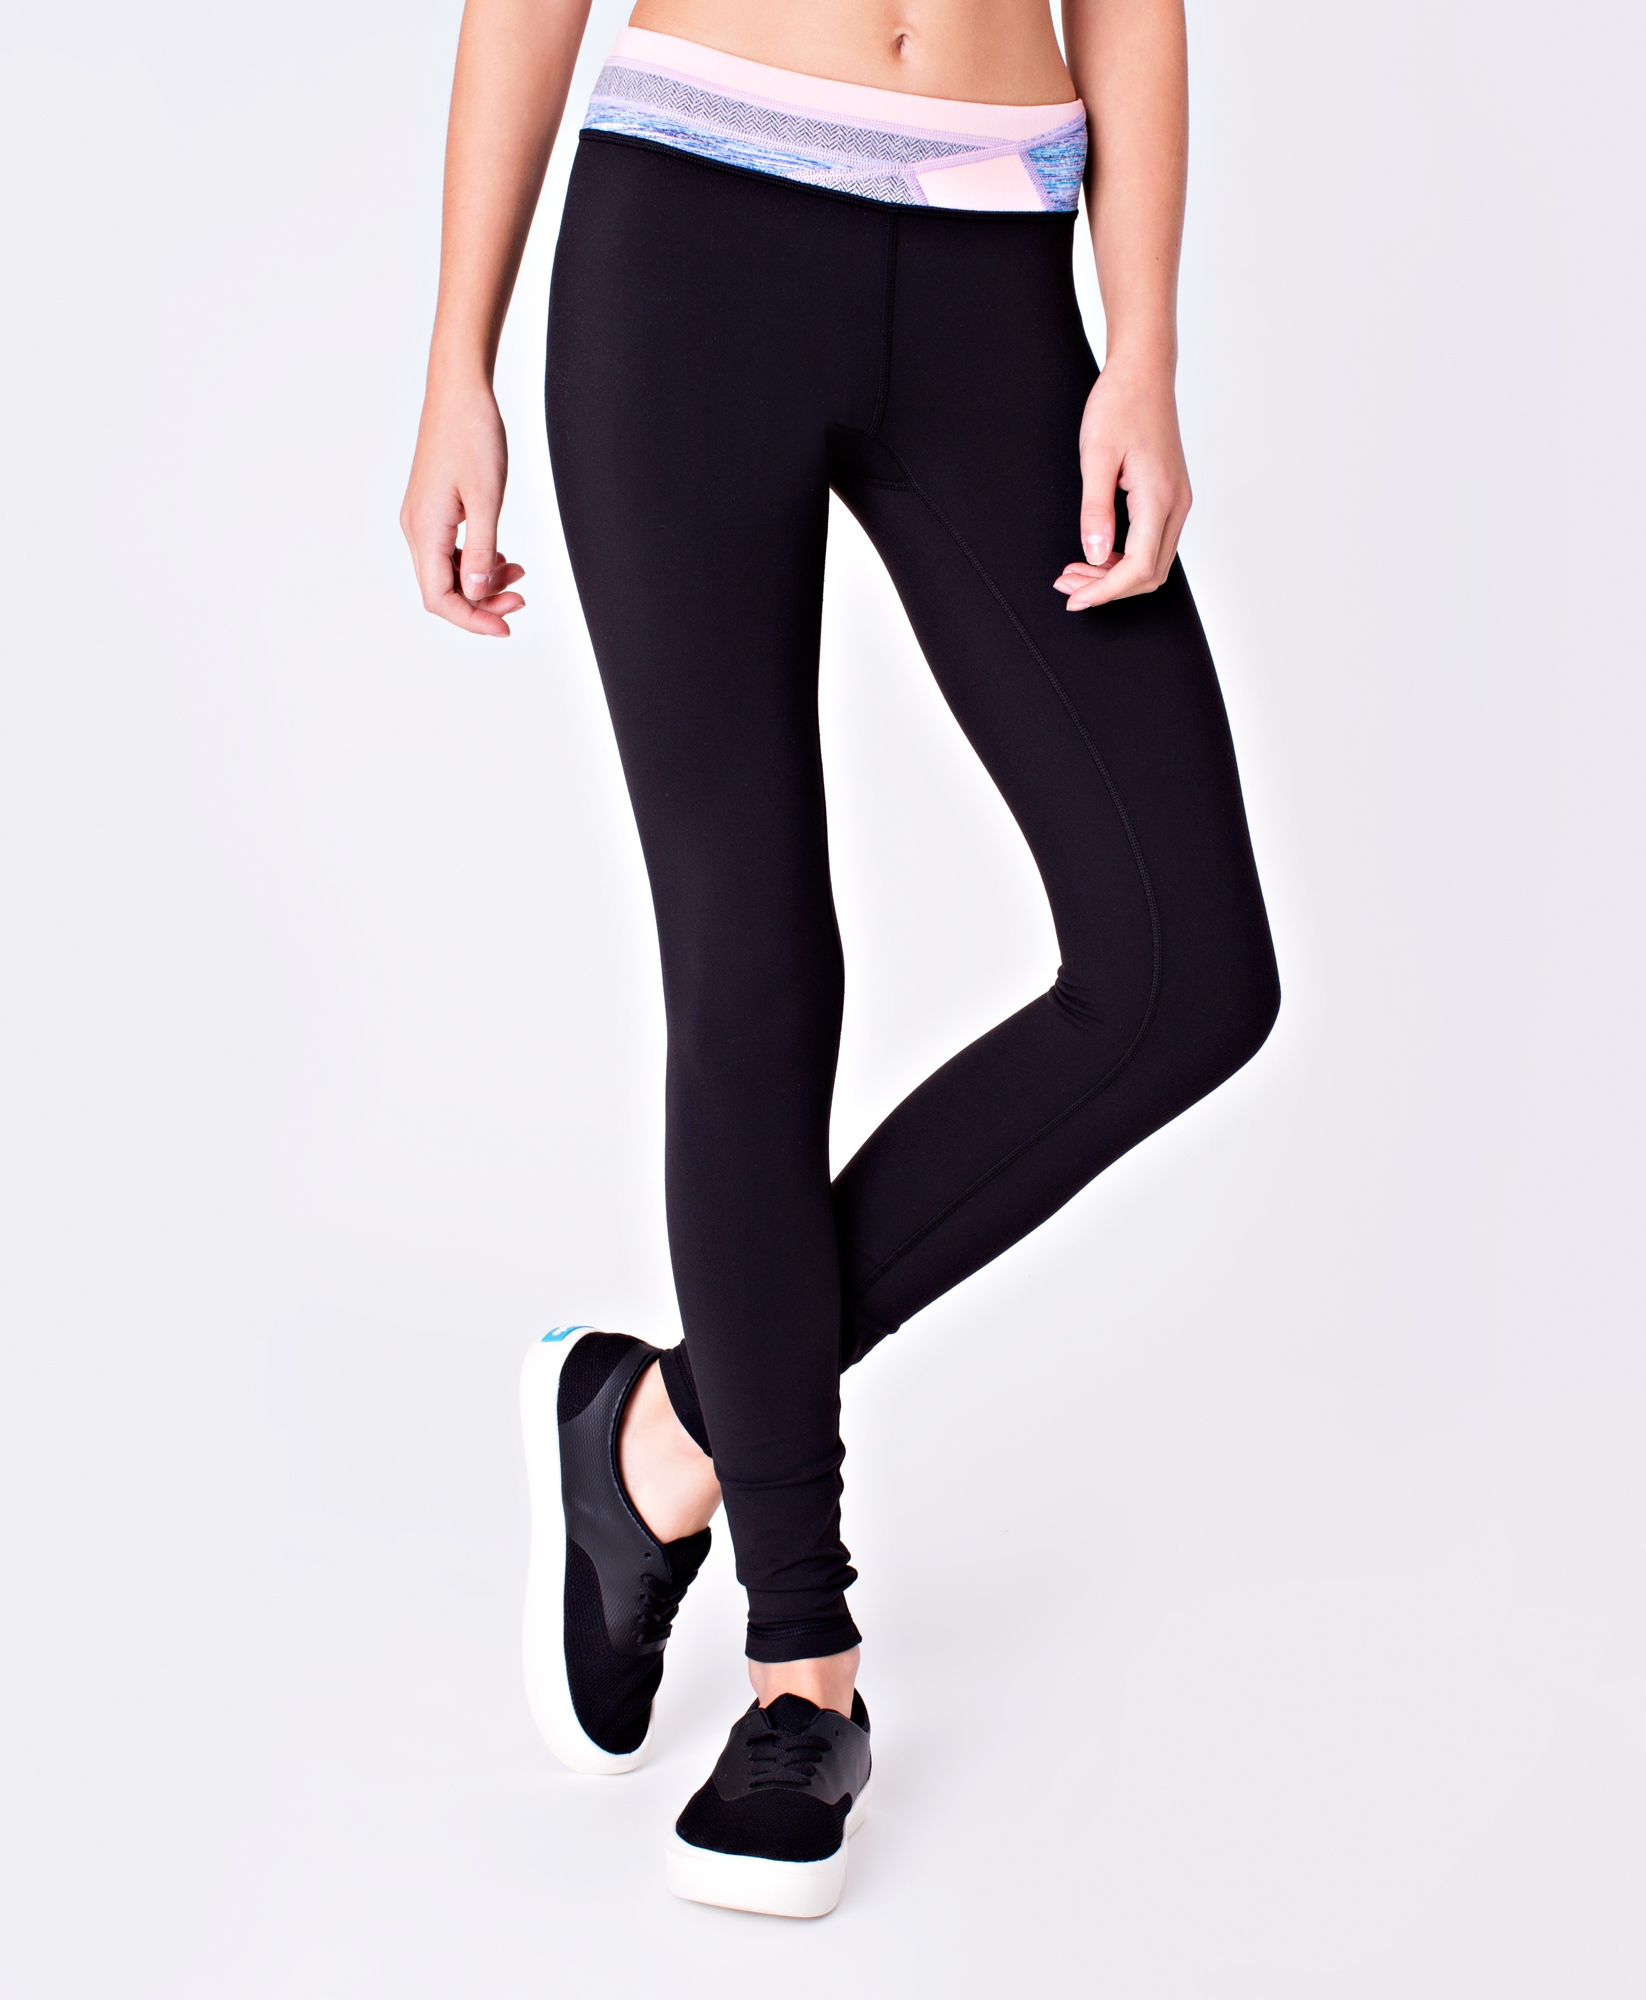 wholesale US online store Ivviva girls black reversible leggings